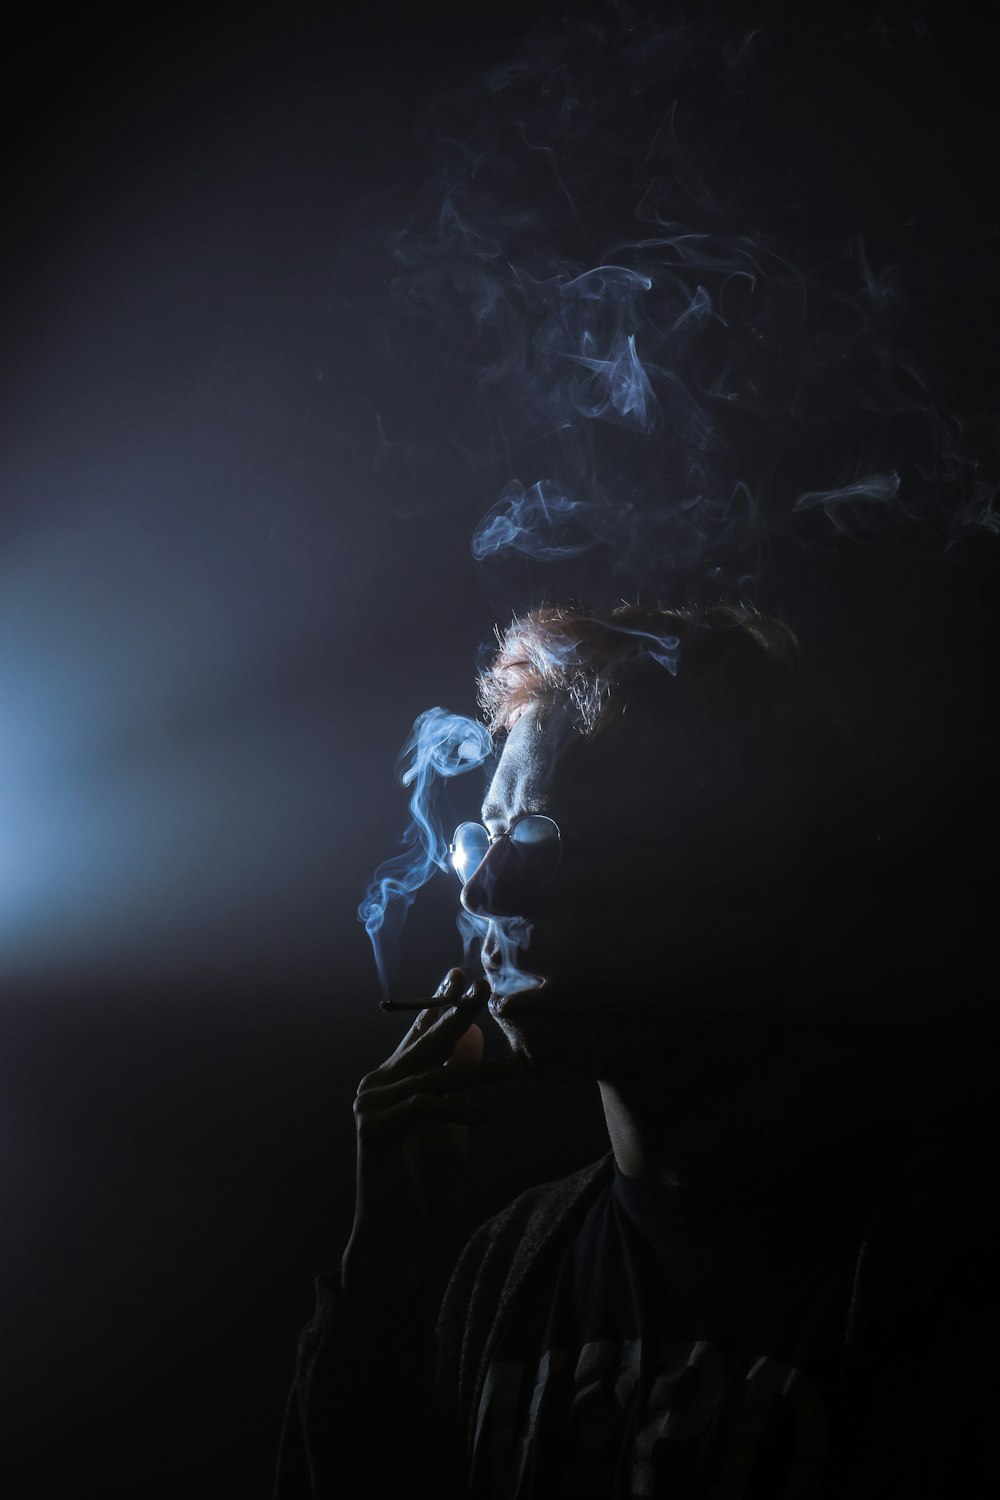 silhouette of smoking man